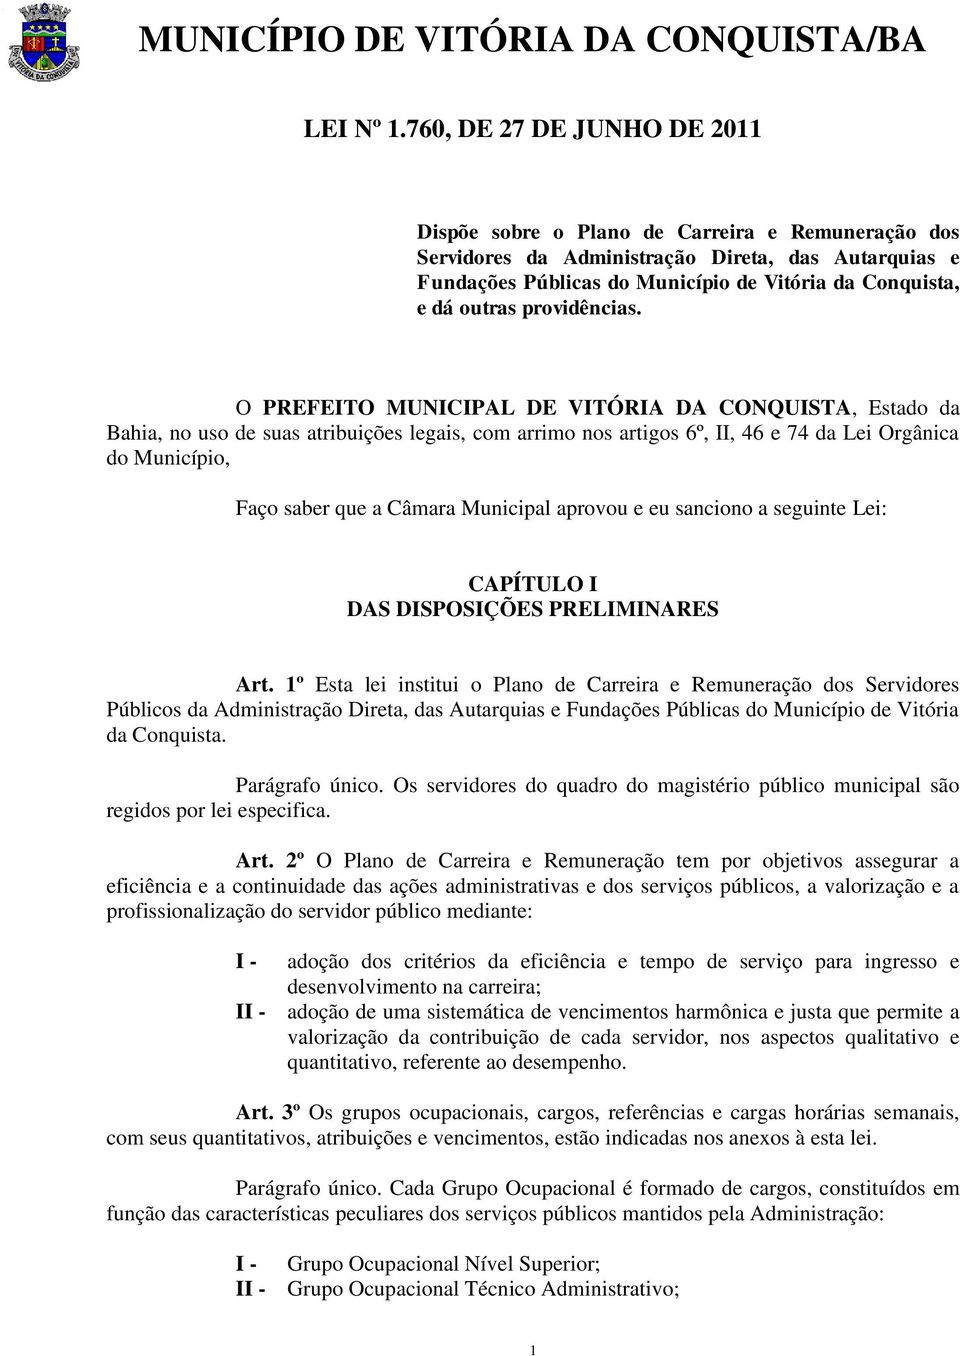 Municipal aprovou e eu sanciono a seguinte Lei: CAPÍTULO I DAS DISPOSIÇÕES PRELIMINARES Art.